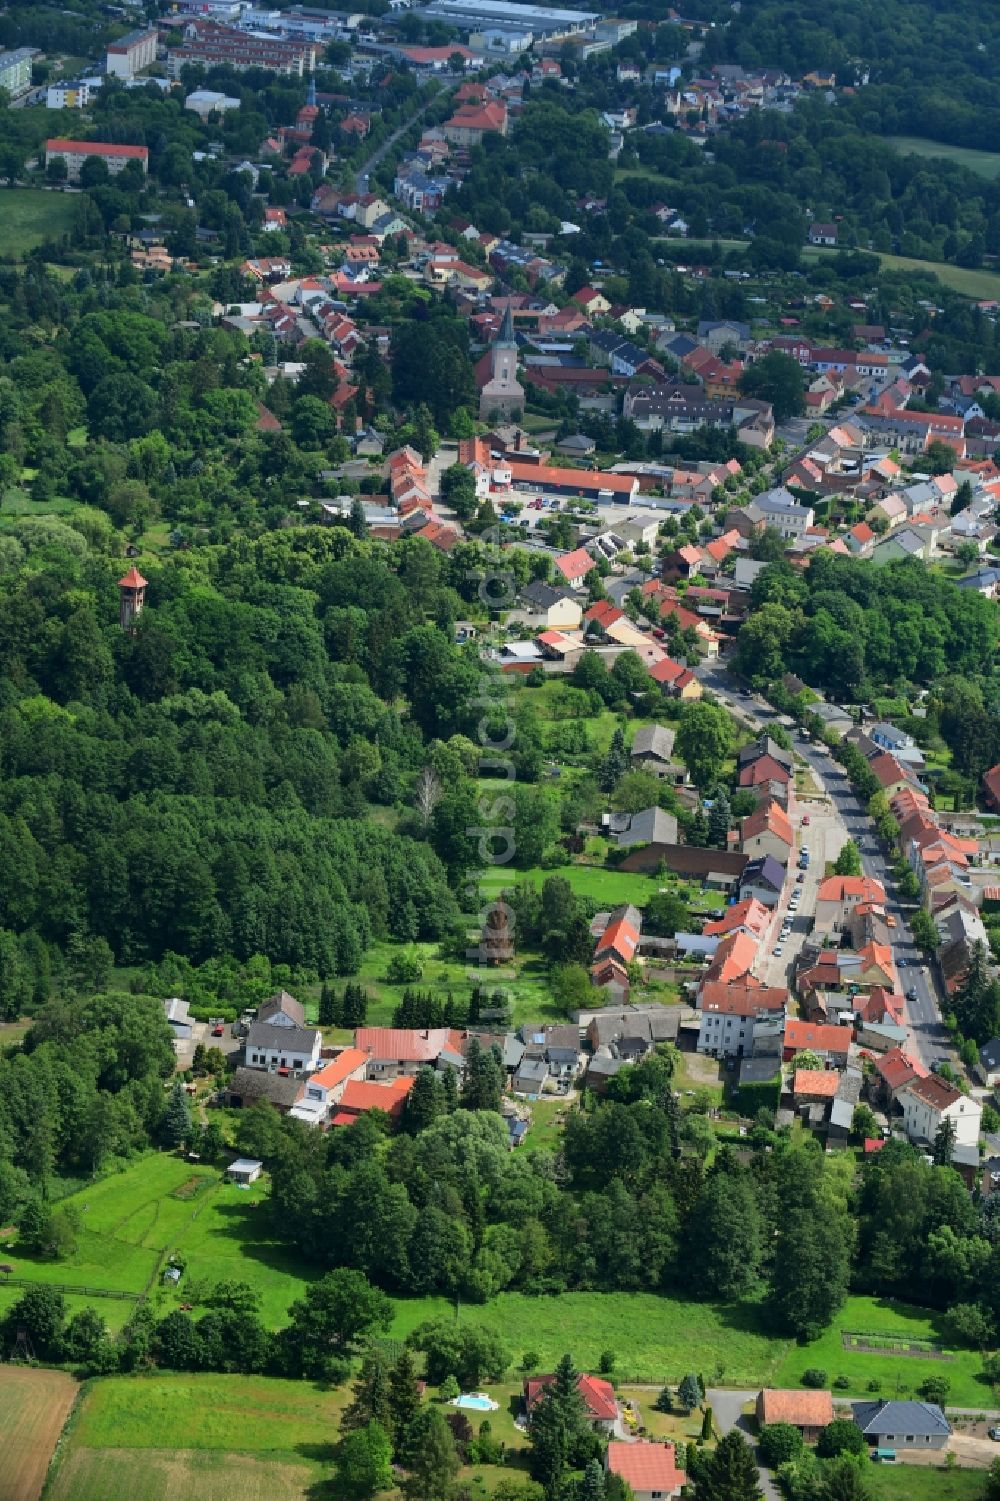 Luftbild Biesenthal - Ortsansicht in Biesenthal im Bundesland Brandenburg, Deutschland